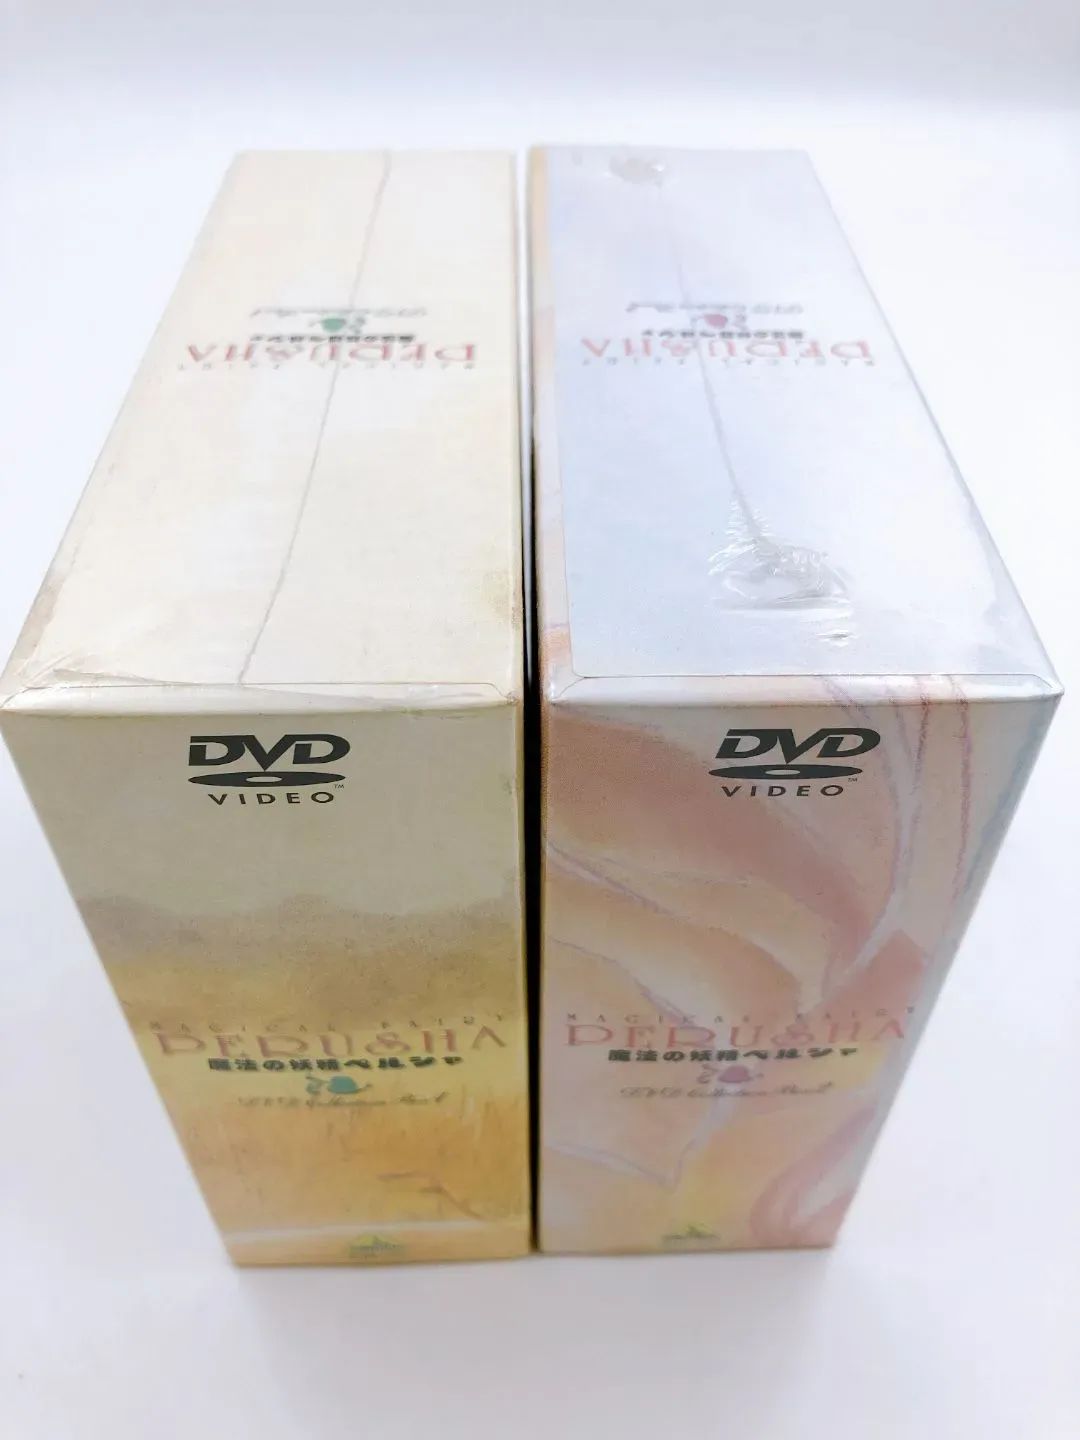 ♪】【未開封】 魔法の妖精ペルシャ DVD COLLECTION BOX 全2BOXセット ...